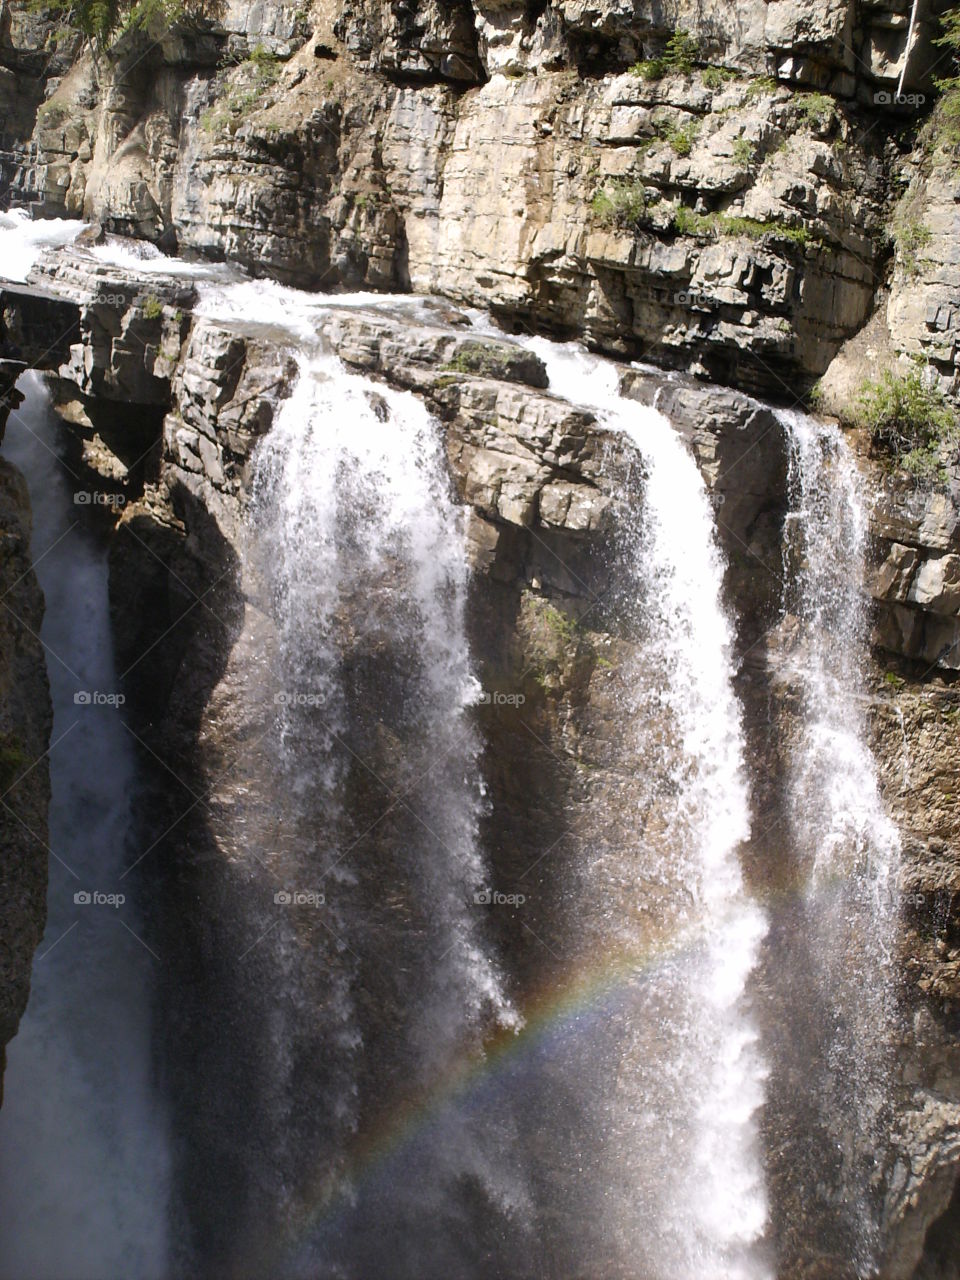 Waterfall in Canada